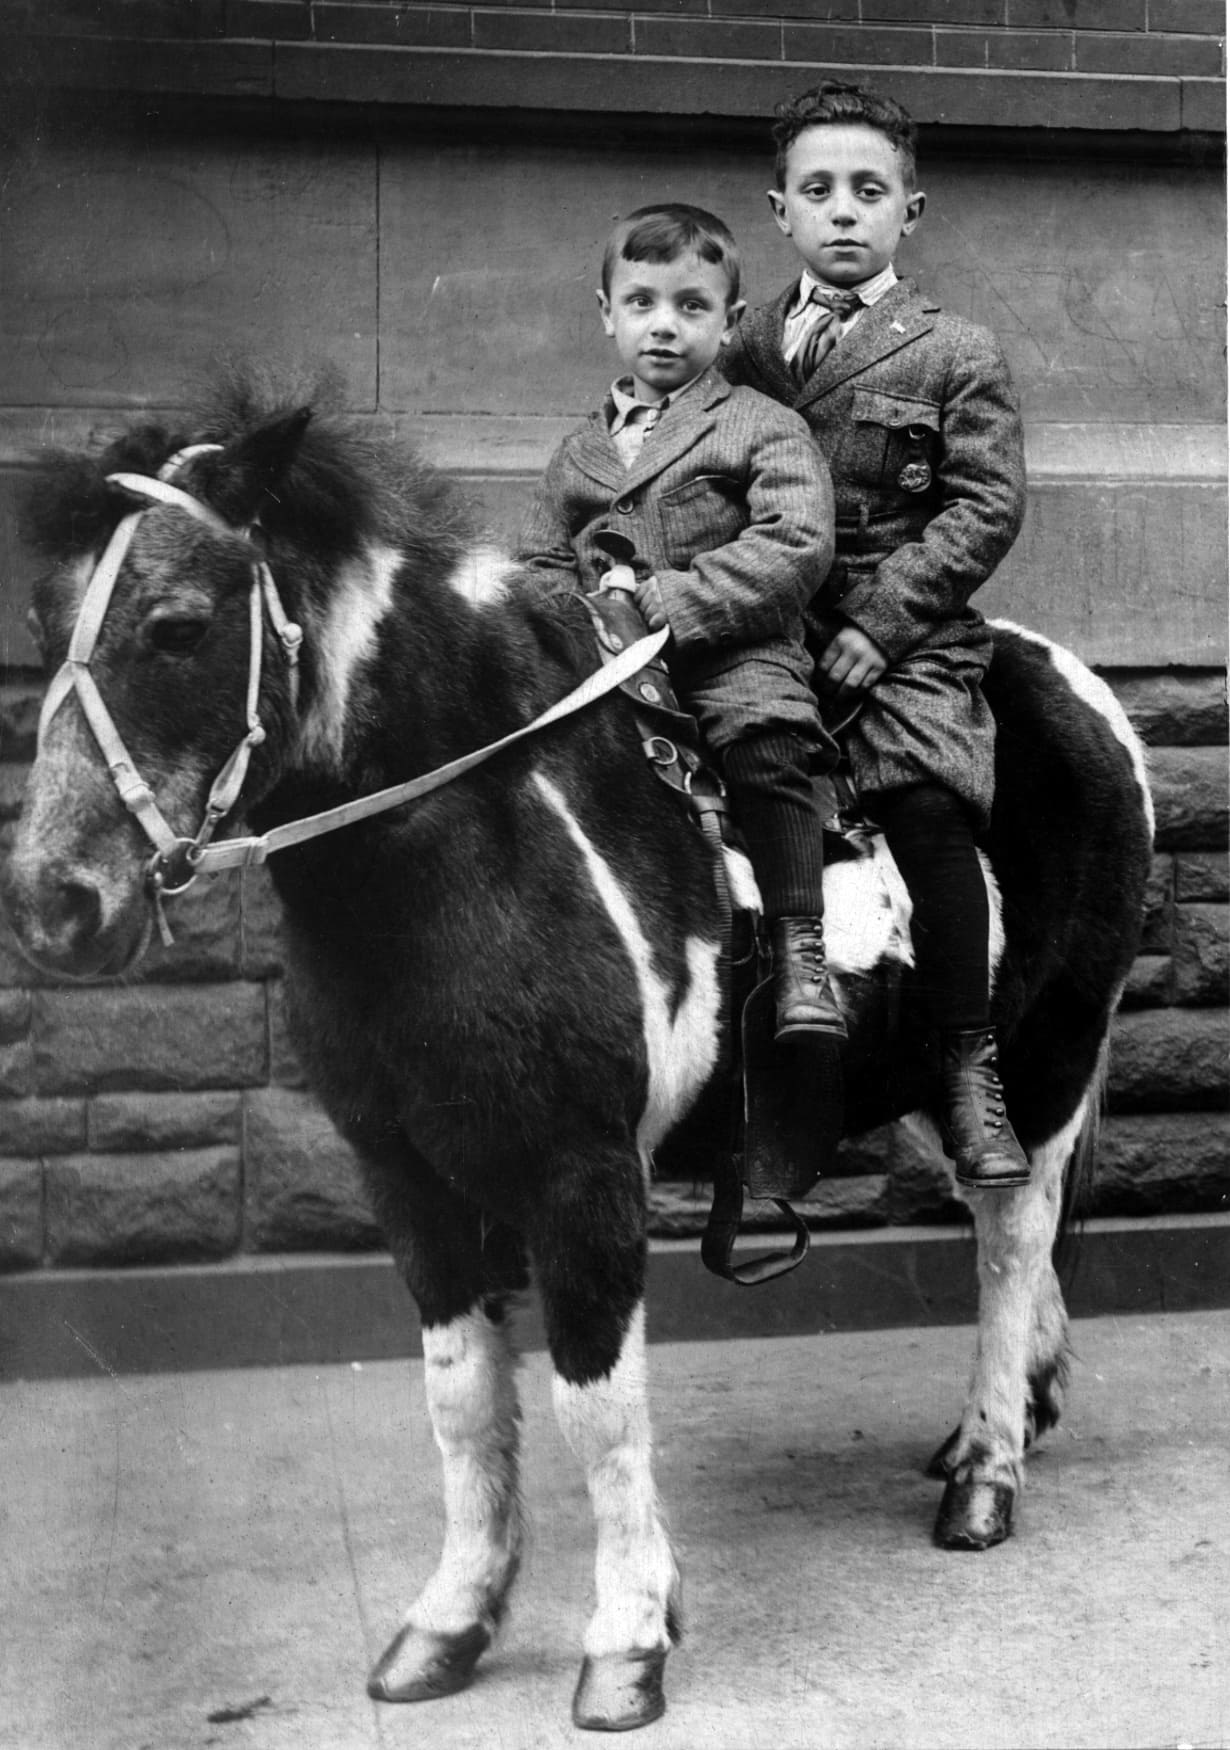 דויד קרסו, אביה של גייל קרסון לוין (מלפנים) עם אחיו. התמונה צולמה ב-1915-1916 בסלוניקי או זמן קצר אחרי הגעתם לניו יורק (צילום: באדיבותה)